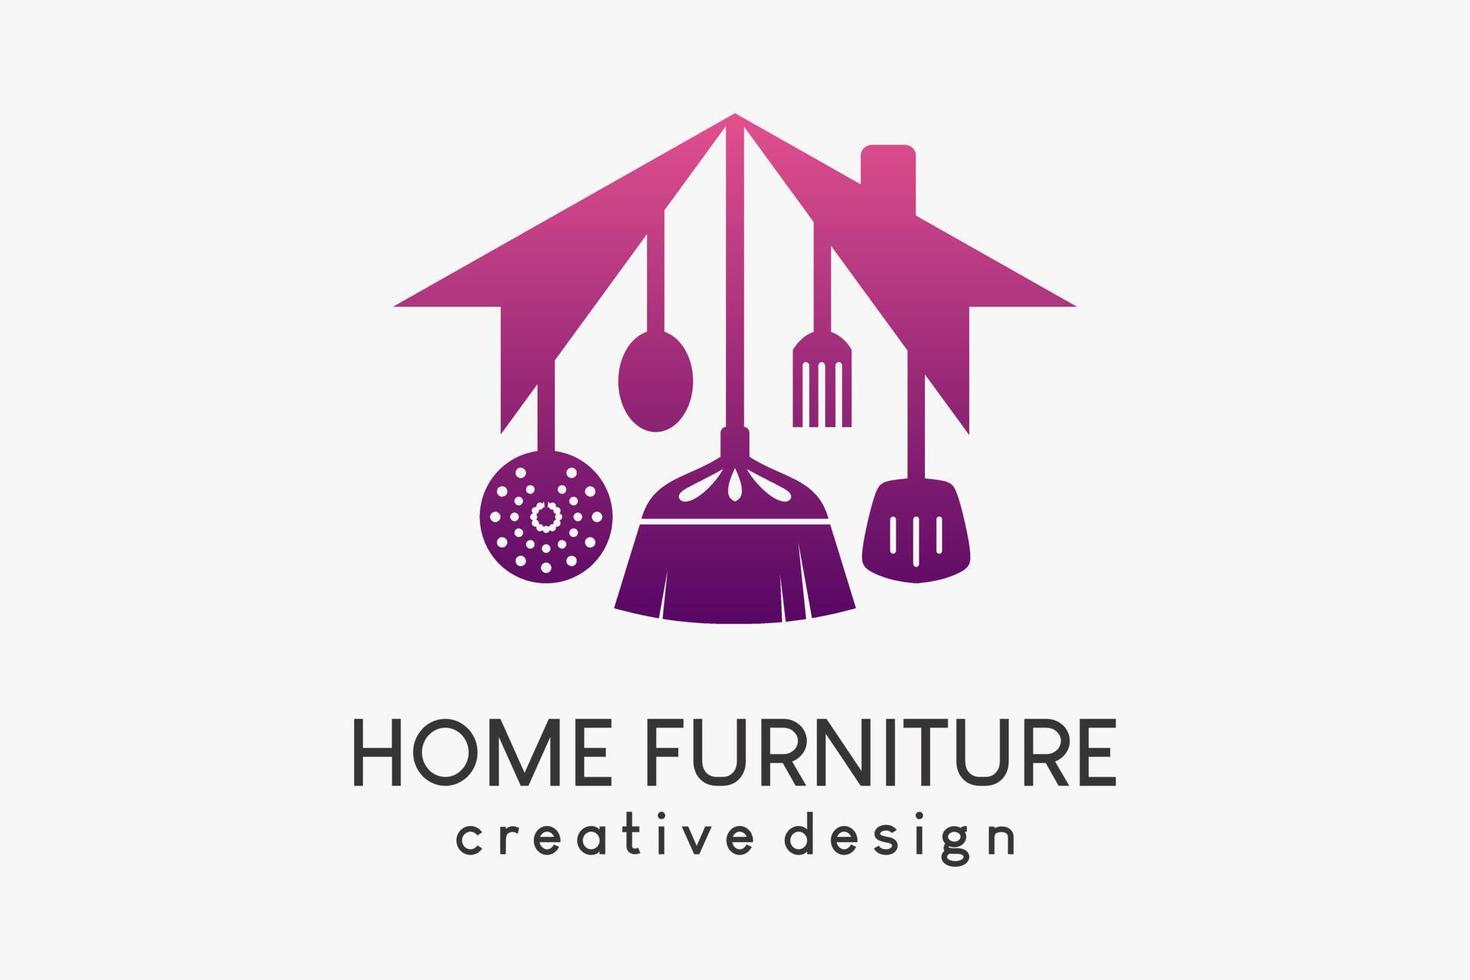 logo's voor huishoudelijke apparaten of meubels, silhouetten van bezems en bestek, frituurgerei gecombineerd met huispictogrammen in een creatief concept vector